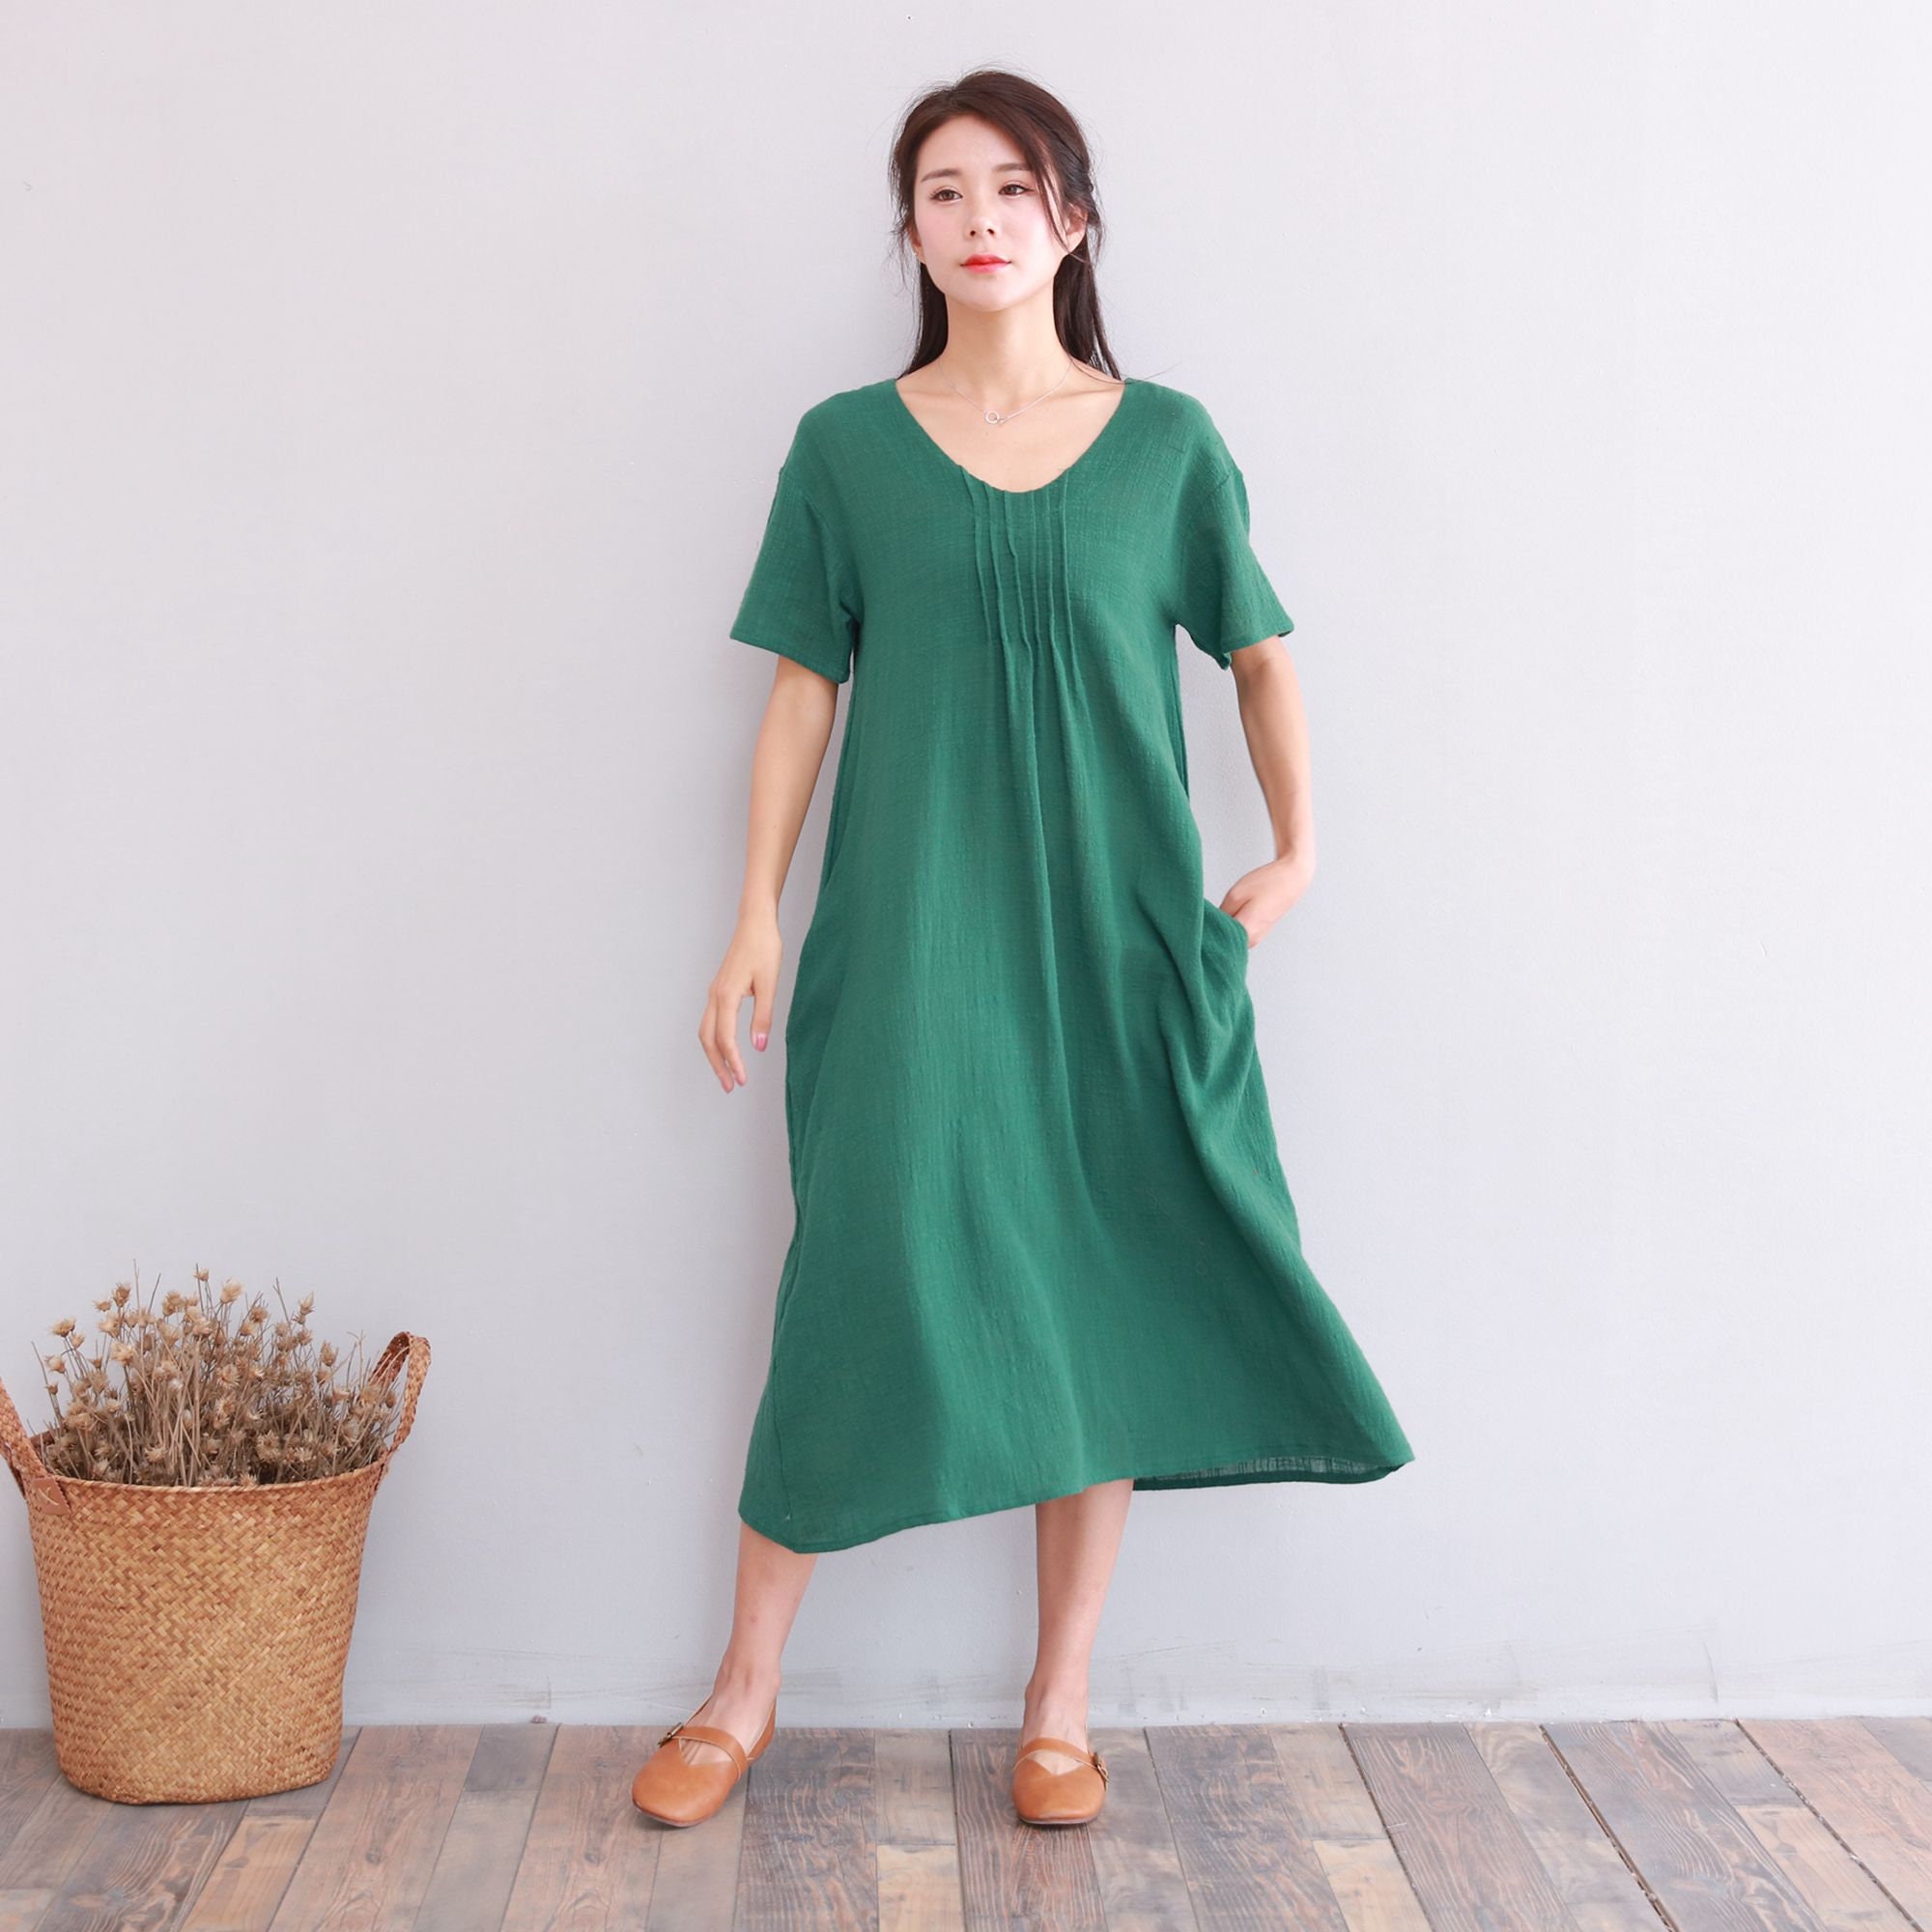 Clearance Dress Final Sale Cotton Linen Dress Summer Short | Etsy